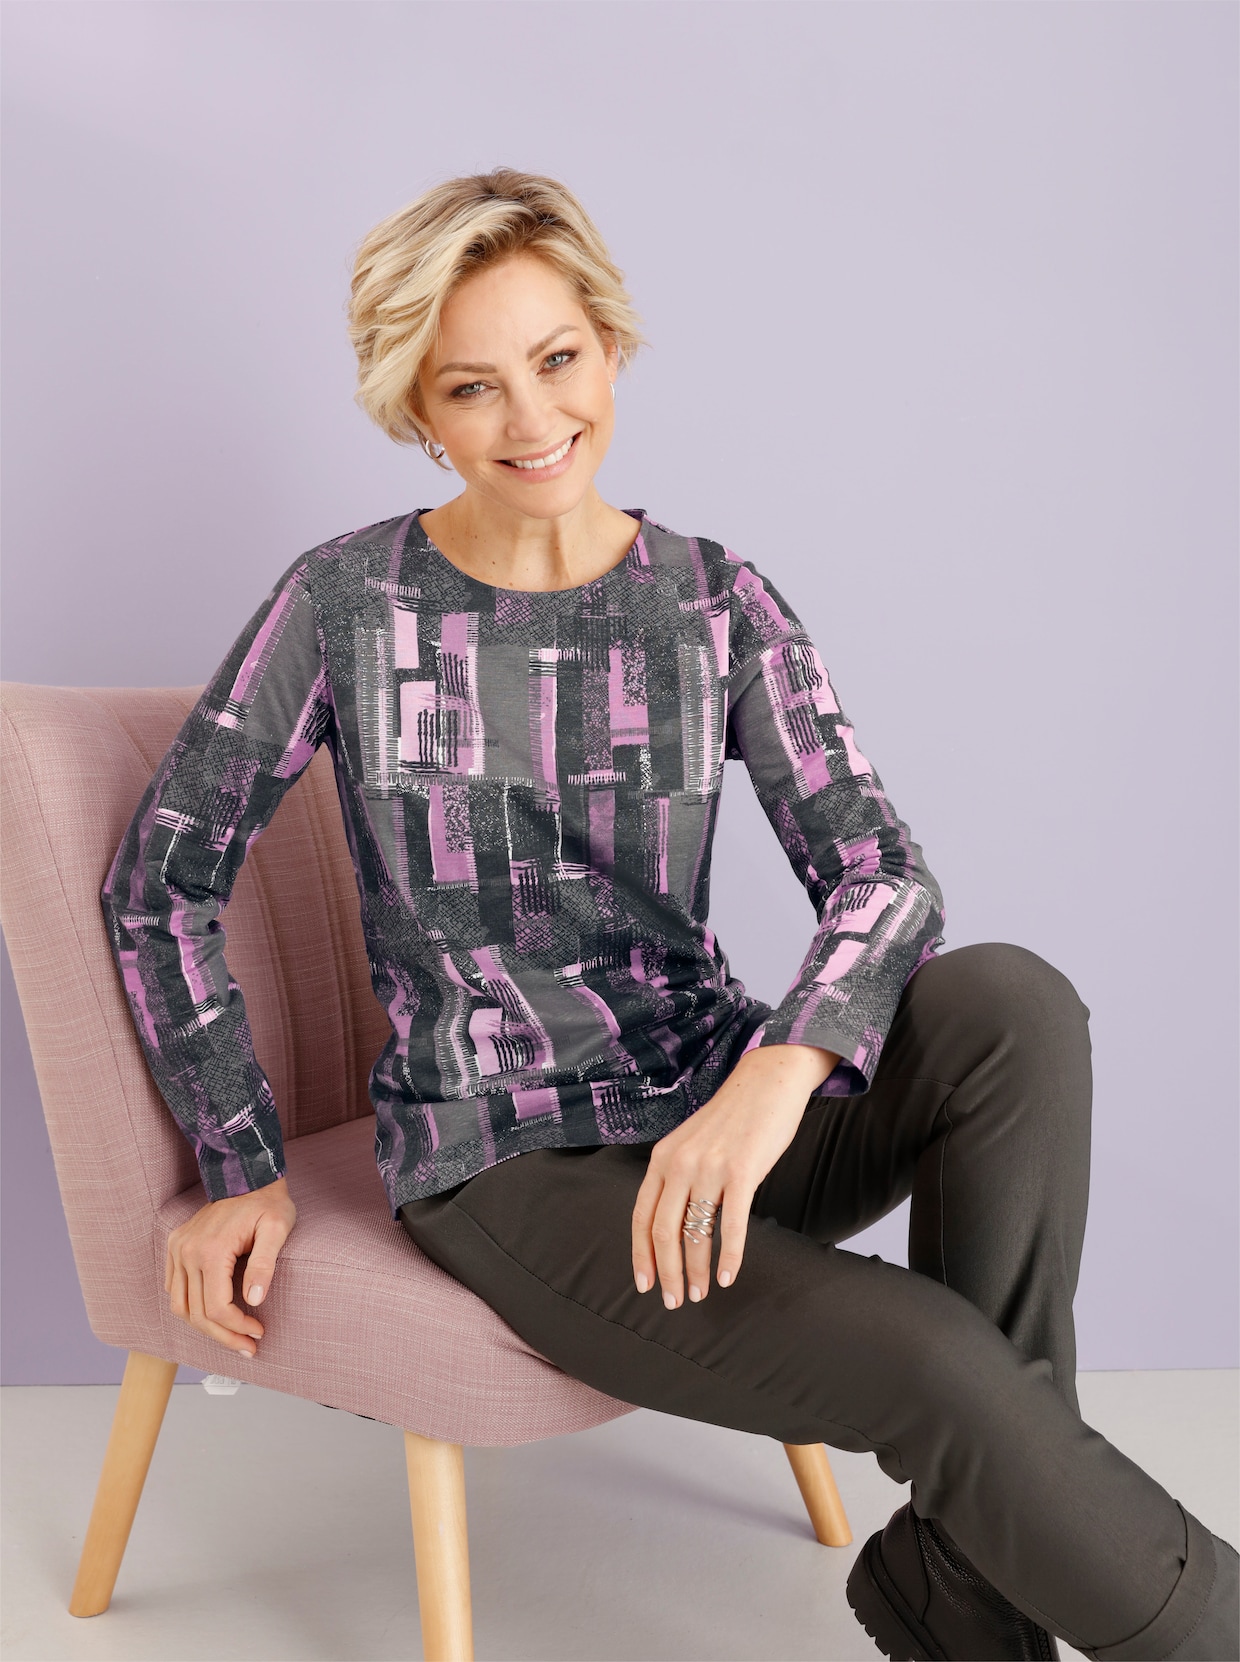 Tričko s potiskem - antracitová-fialová-vzor